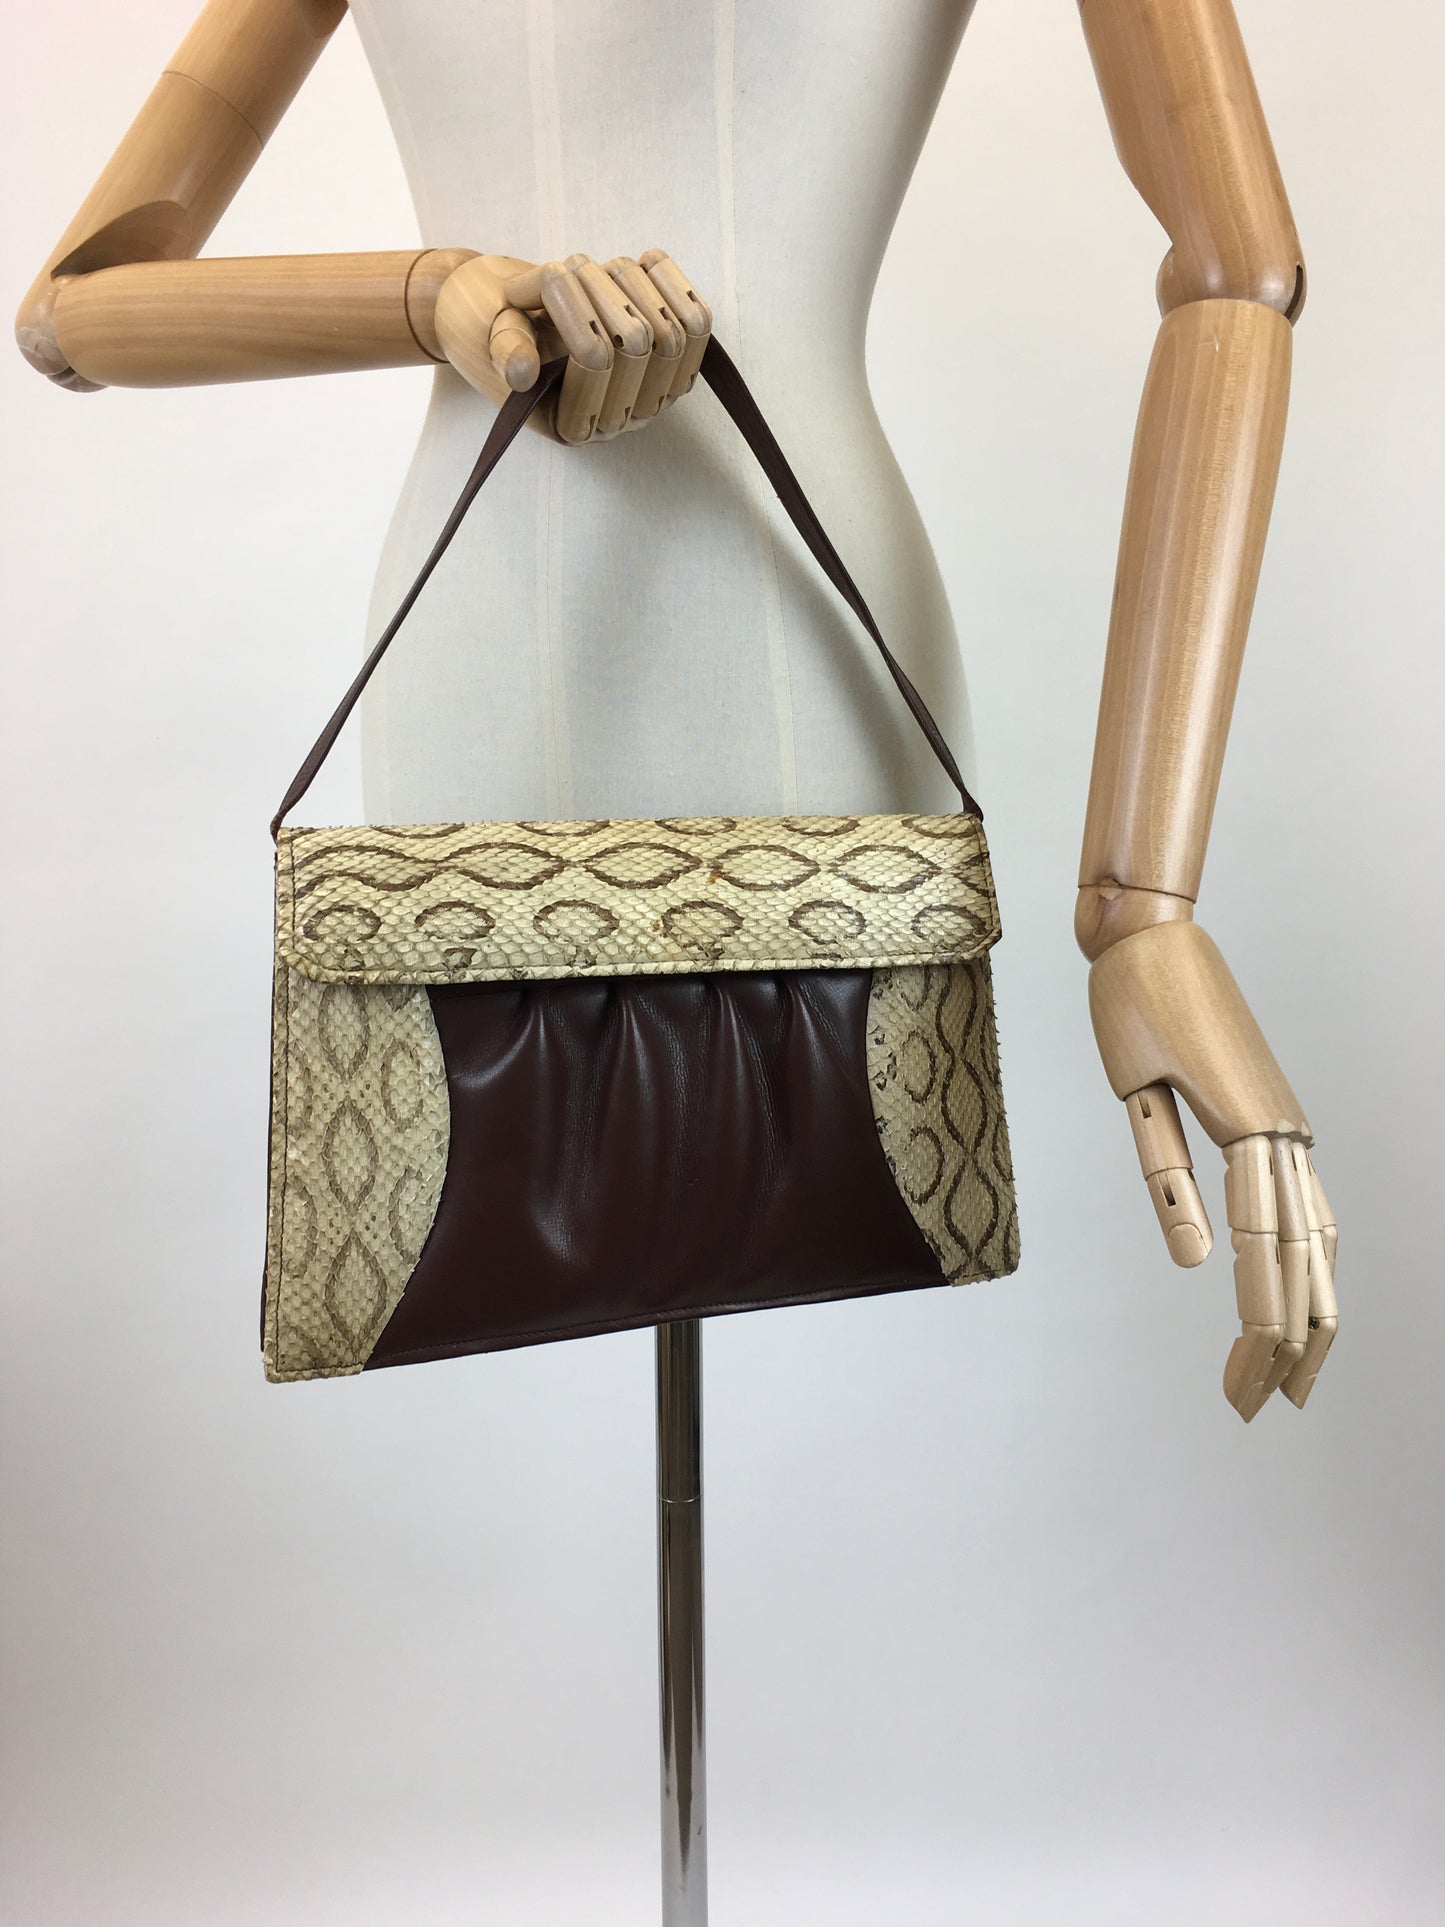 Original 1940's Darling Snakeskin & Leather Handbag - With Lovely Details